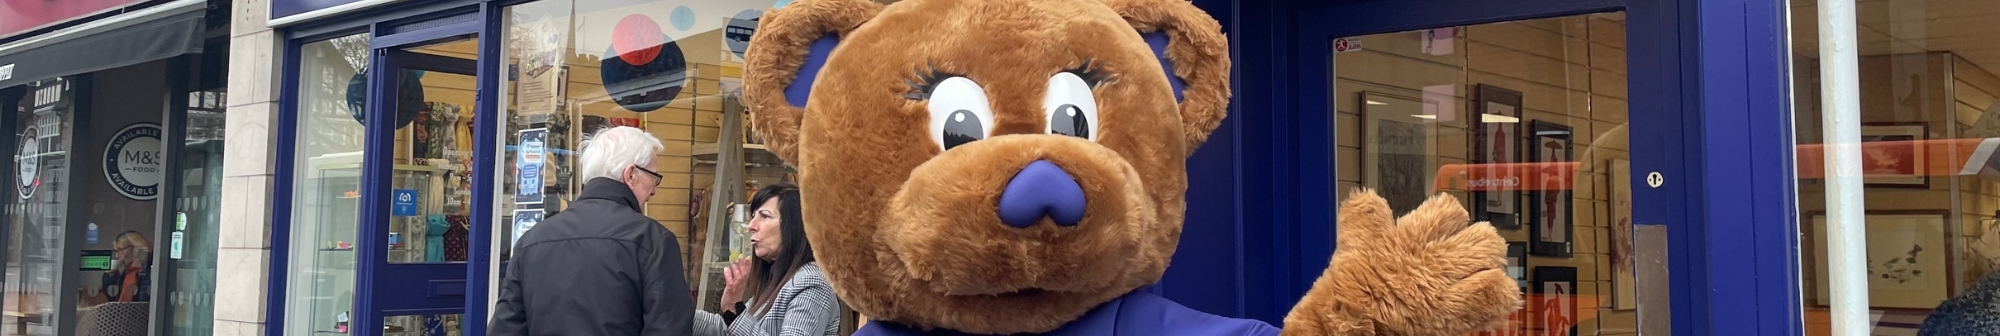 harry-the-bear-mascot-outside-hospice-shop-waving